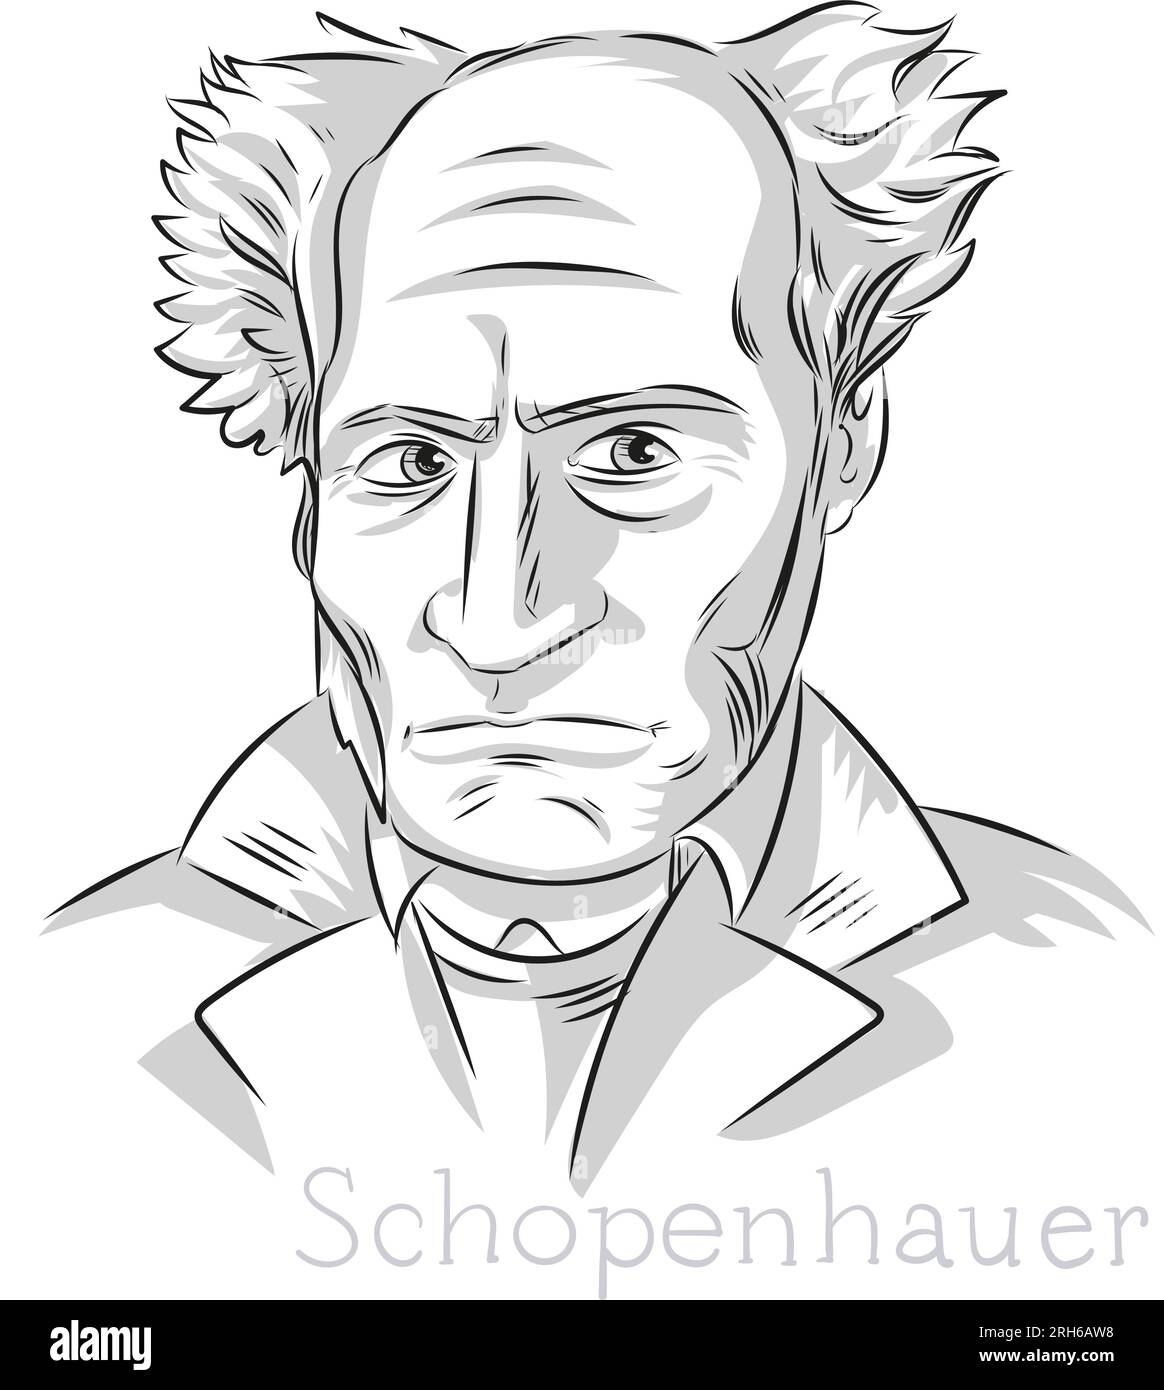 Schopenhauer philosophe au trait dessiné à la main art Portrait Illustration Illustration de Vecteur